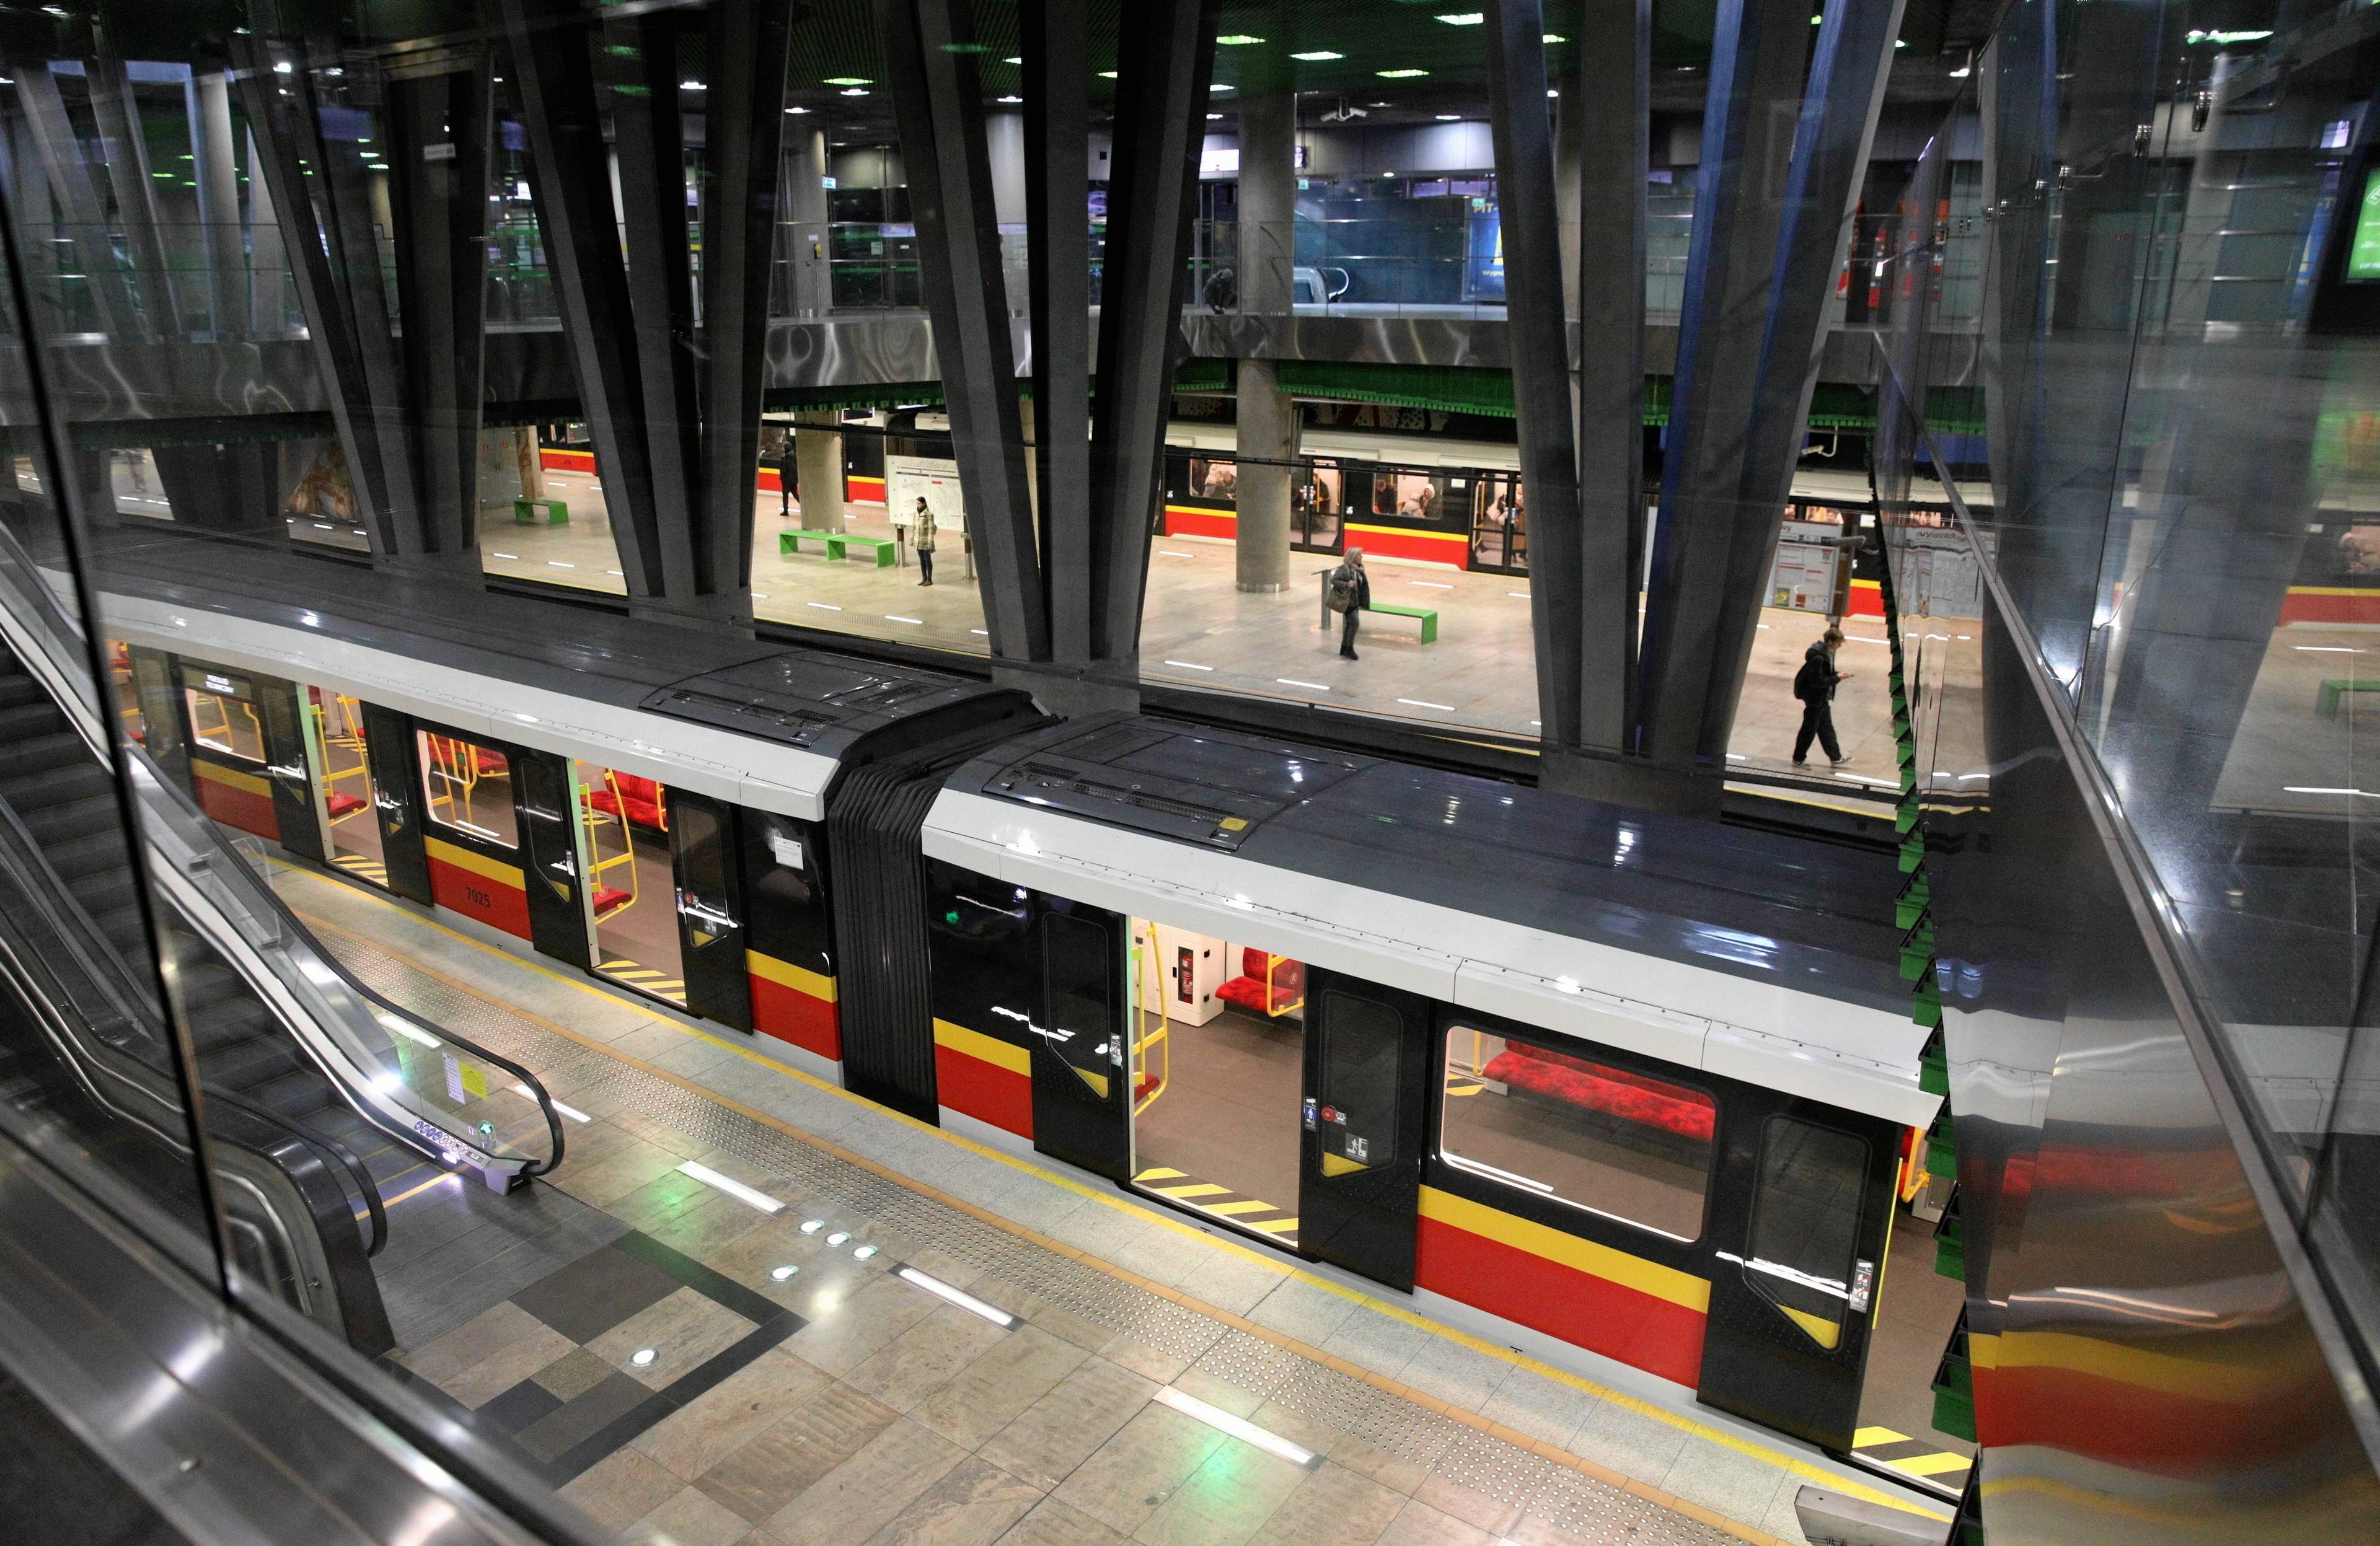 stacja warszawskiego metra widziana od góry